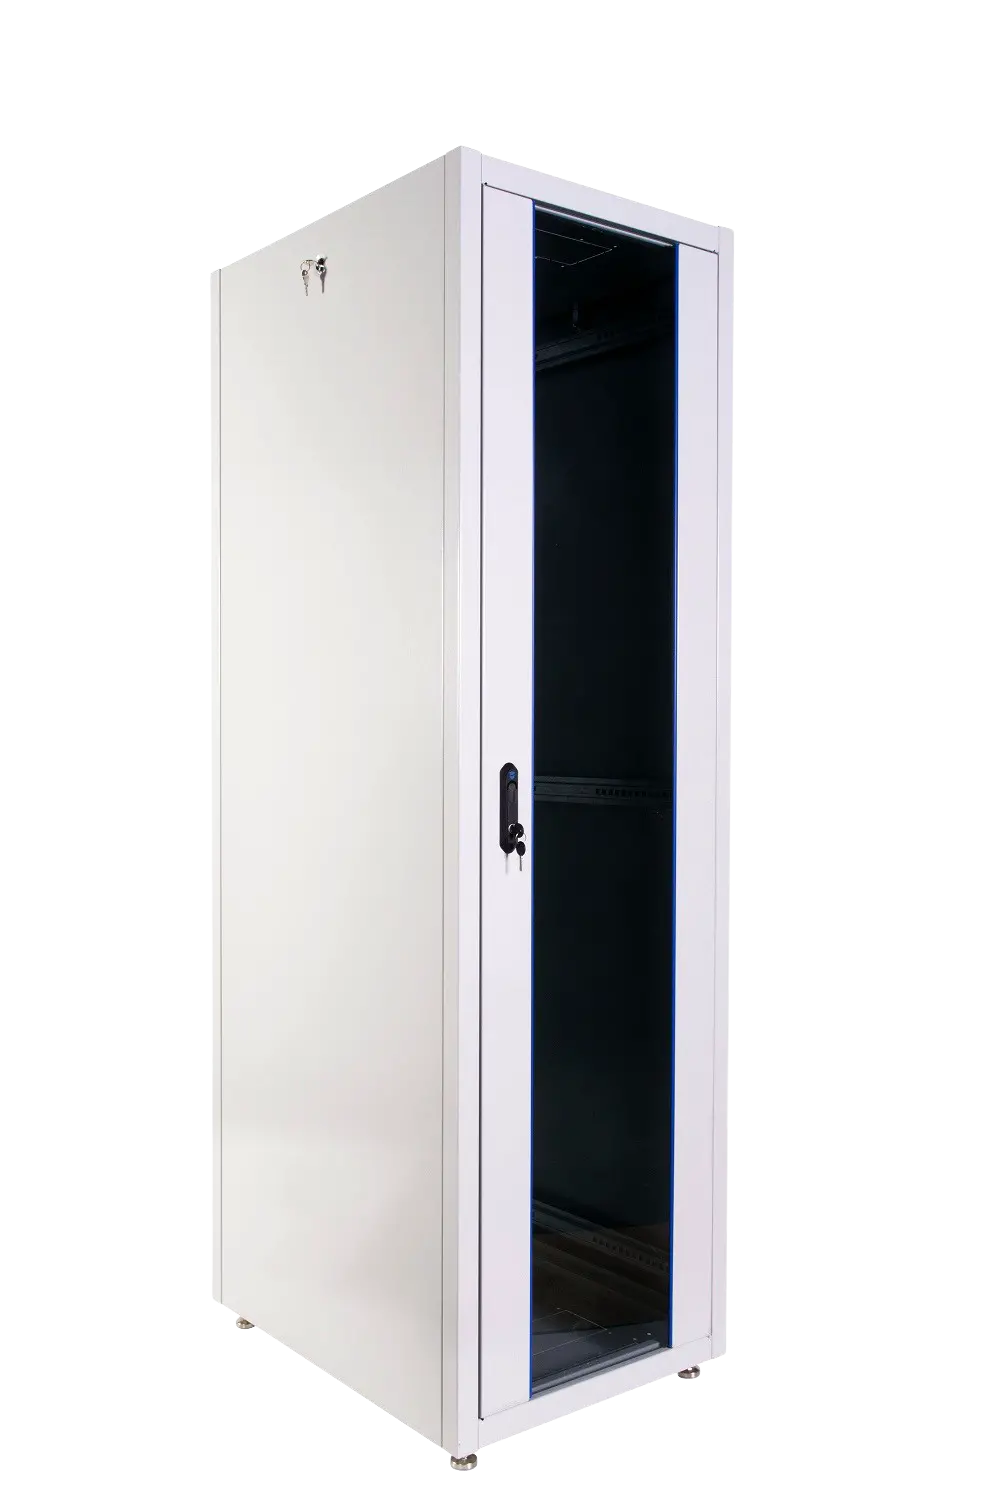 Шкаф телекоммуникационный напольный ЭКОНОМ 48U (600 × 800) дверь перфорированная 2 шт. ШТК-Э-48.6.8-44АА